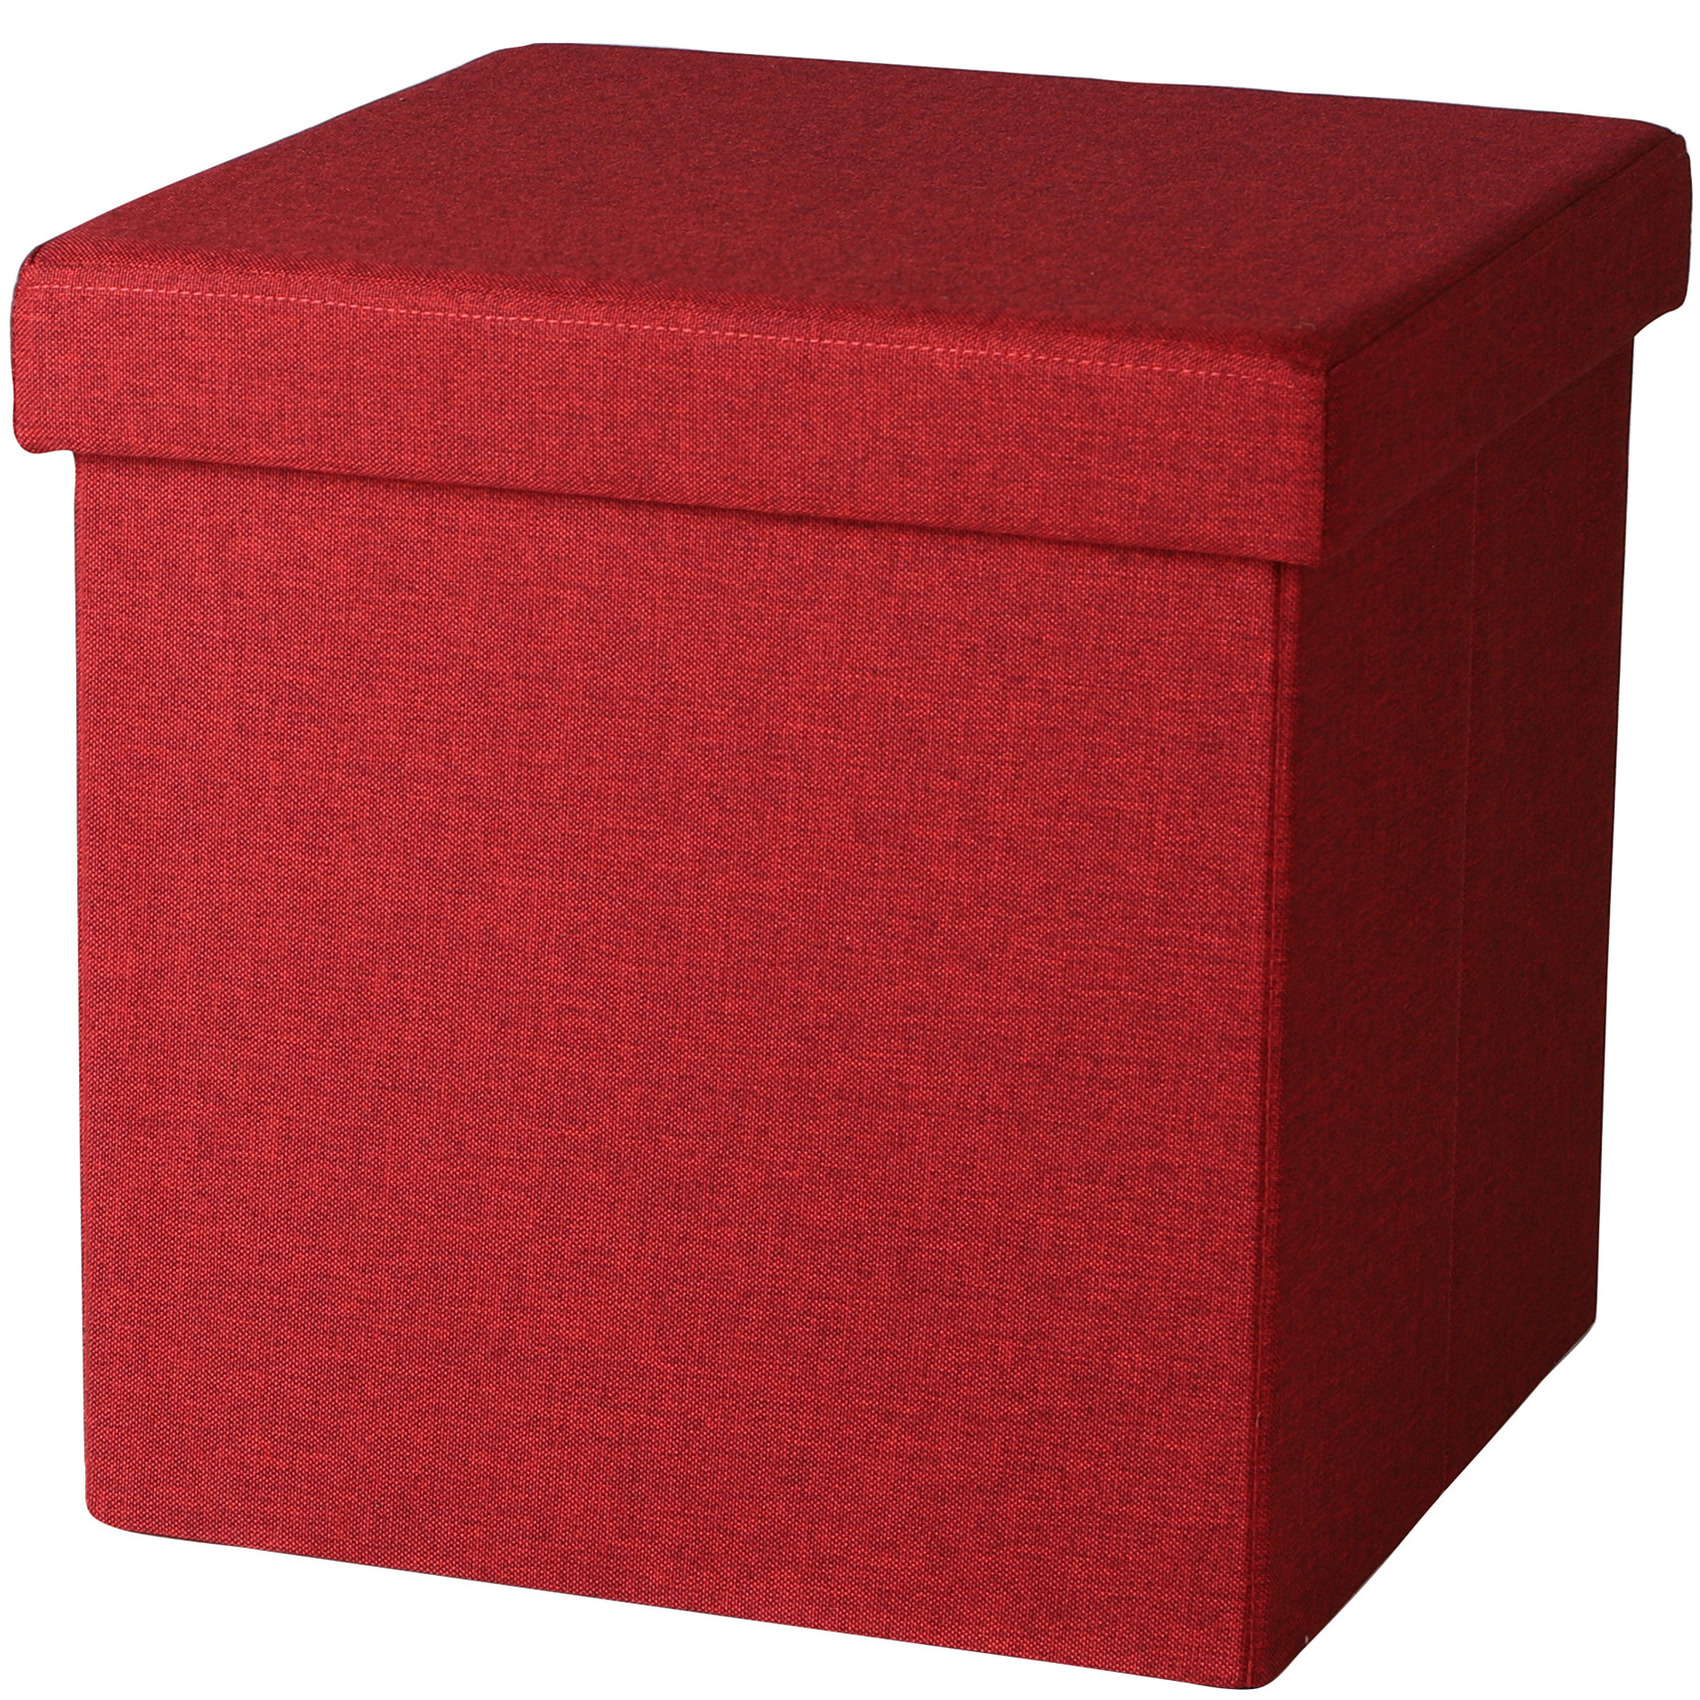 Poef-hocker opbergbox zit krukje rood linnen-mdf 37 x 37 cm opvouwbaar